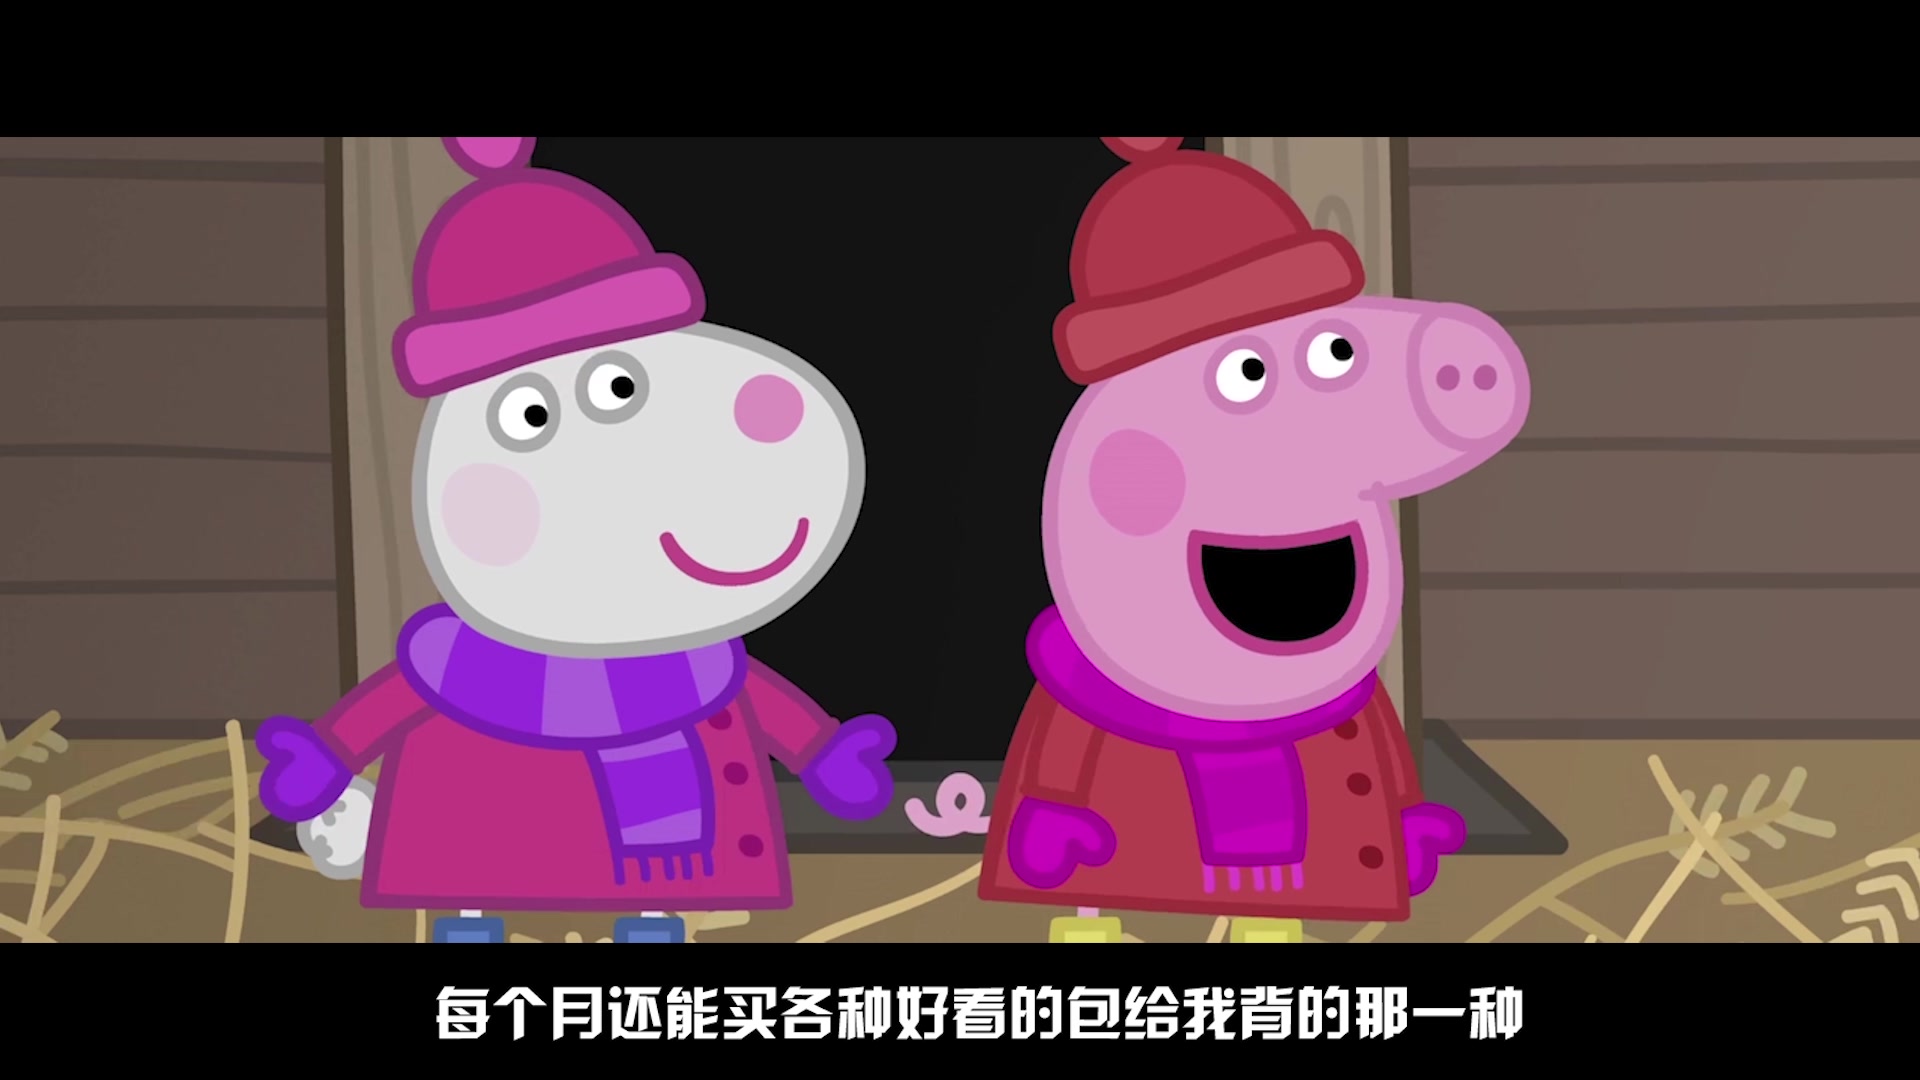 温州话版《小猪佩奇》——塑料花姐妹